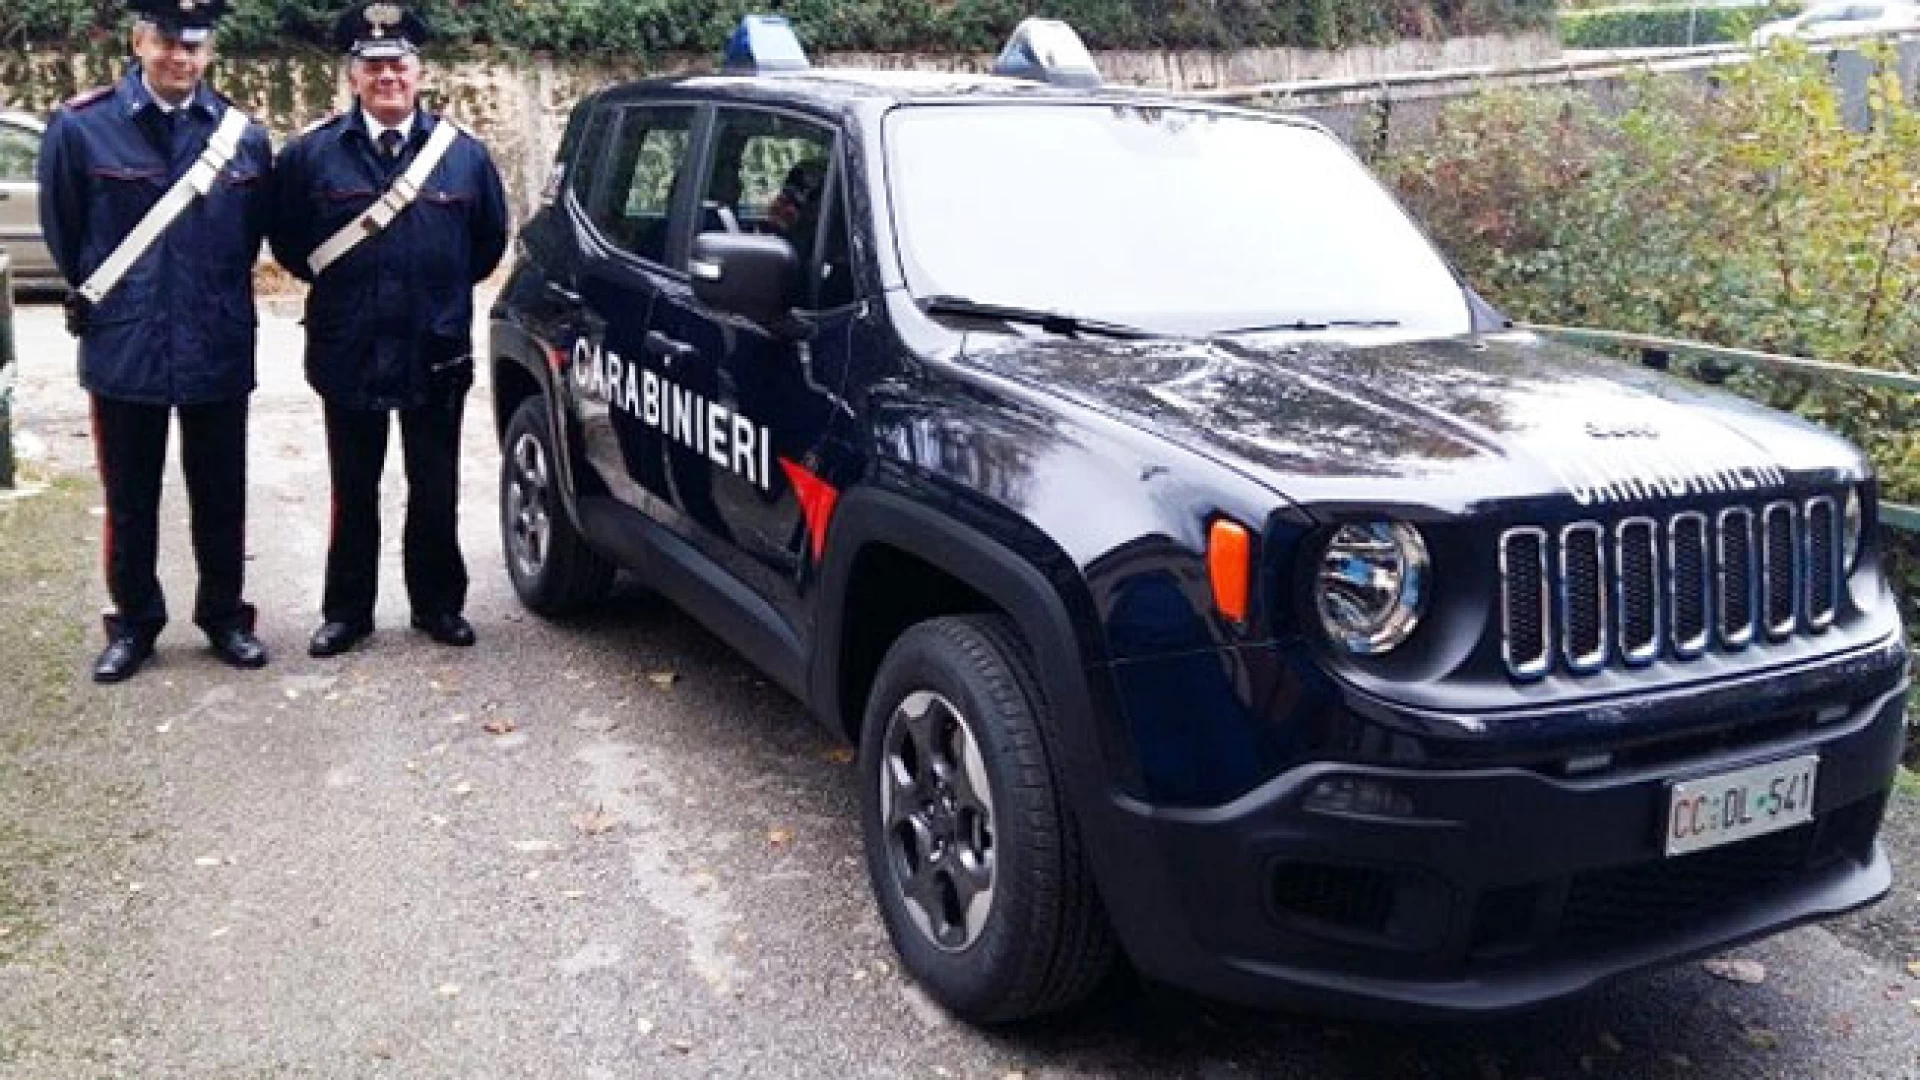 Isernia: Nuovi mezzi assegnati alle Stazioni Carabinieri,  per un controllo più efficace e aderente alle caratteristiche morfologiche del territorio,  arrivano i fuoristrada Jeep Renegade.